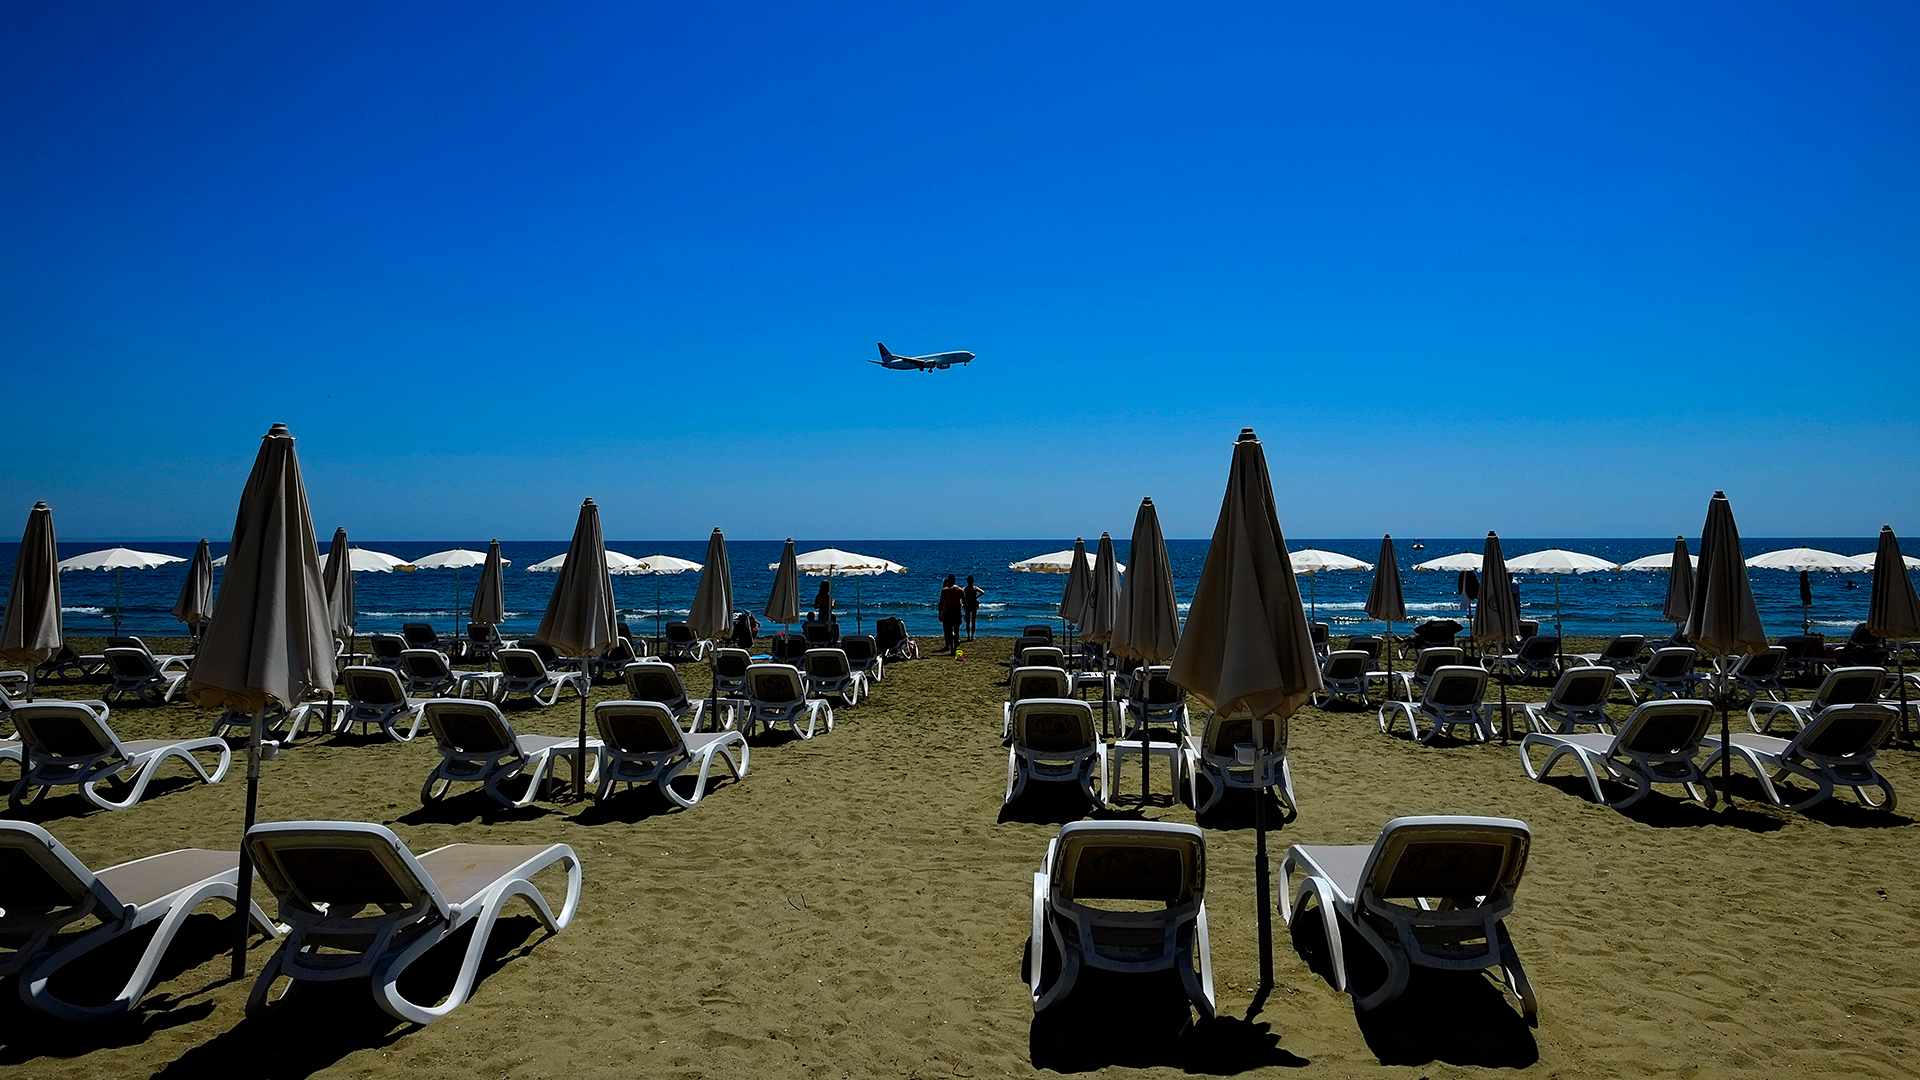 Einige Menschen sonnen sich am Makenzi Strand in Larnaka (Zypern) während sich im Hintergrund ein Flugzeug auf die Landung am internationalen Flughafen Larnaca vorbereitet. | dpa